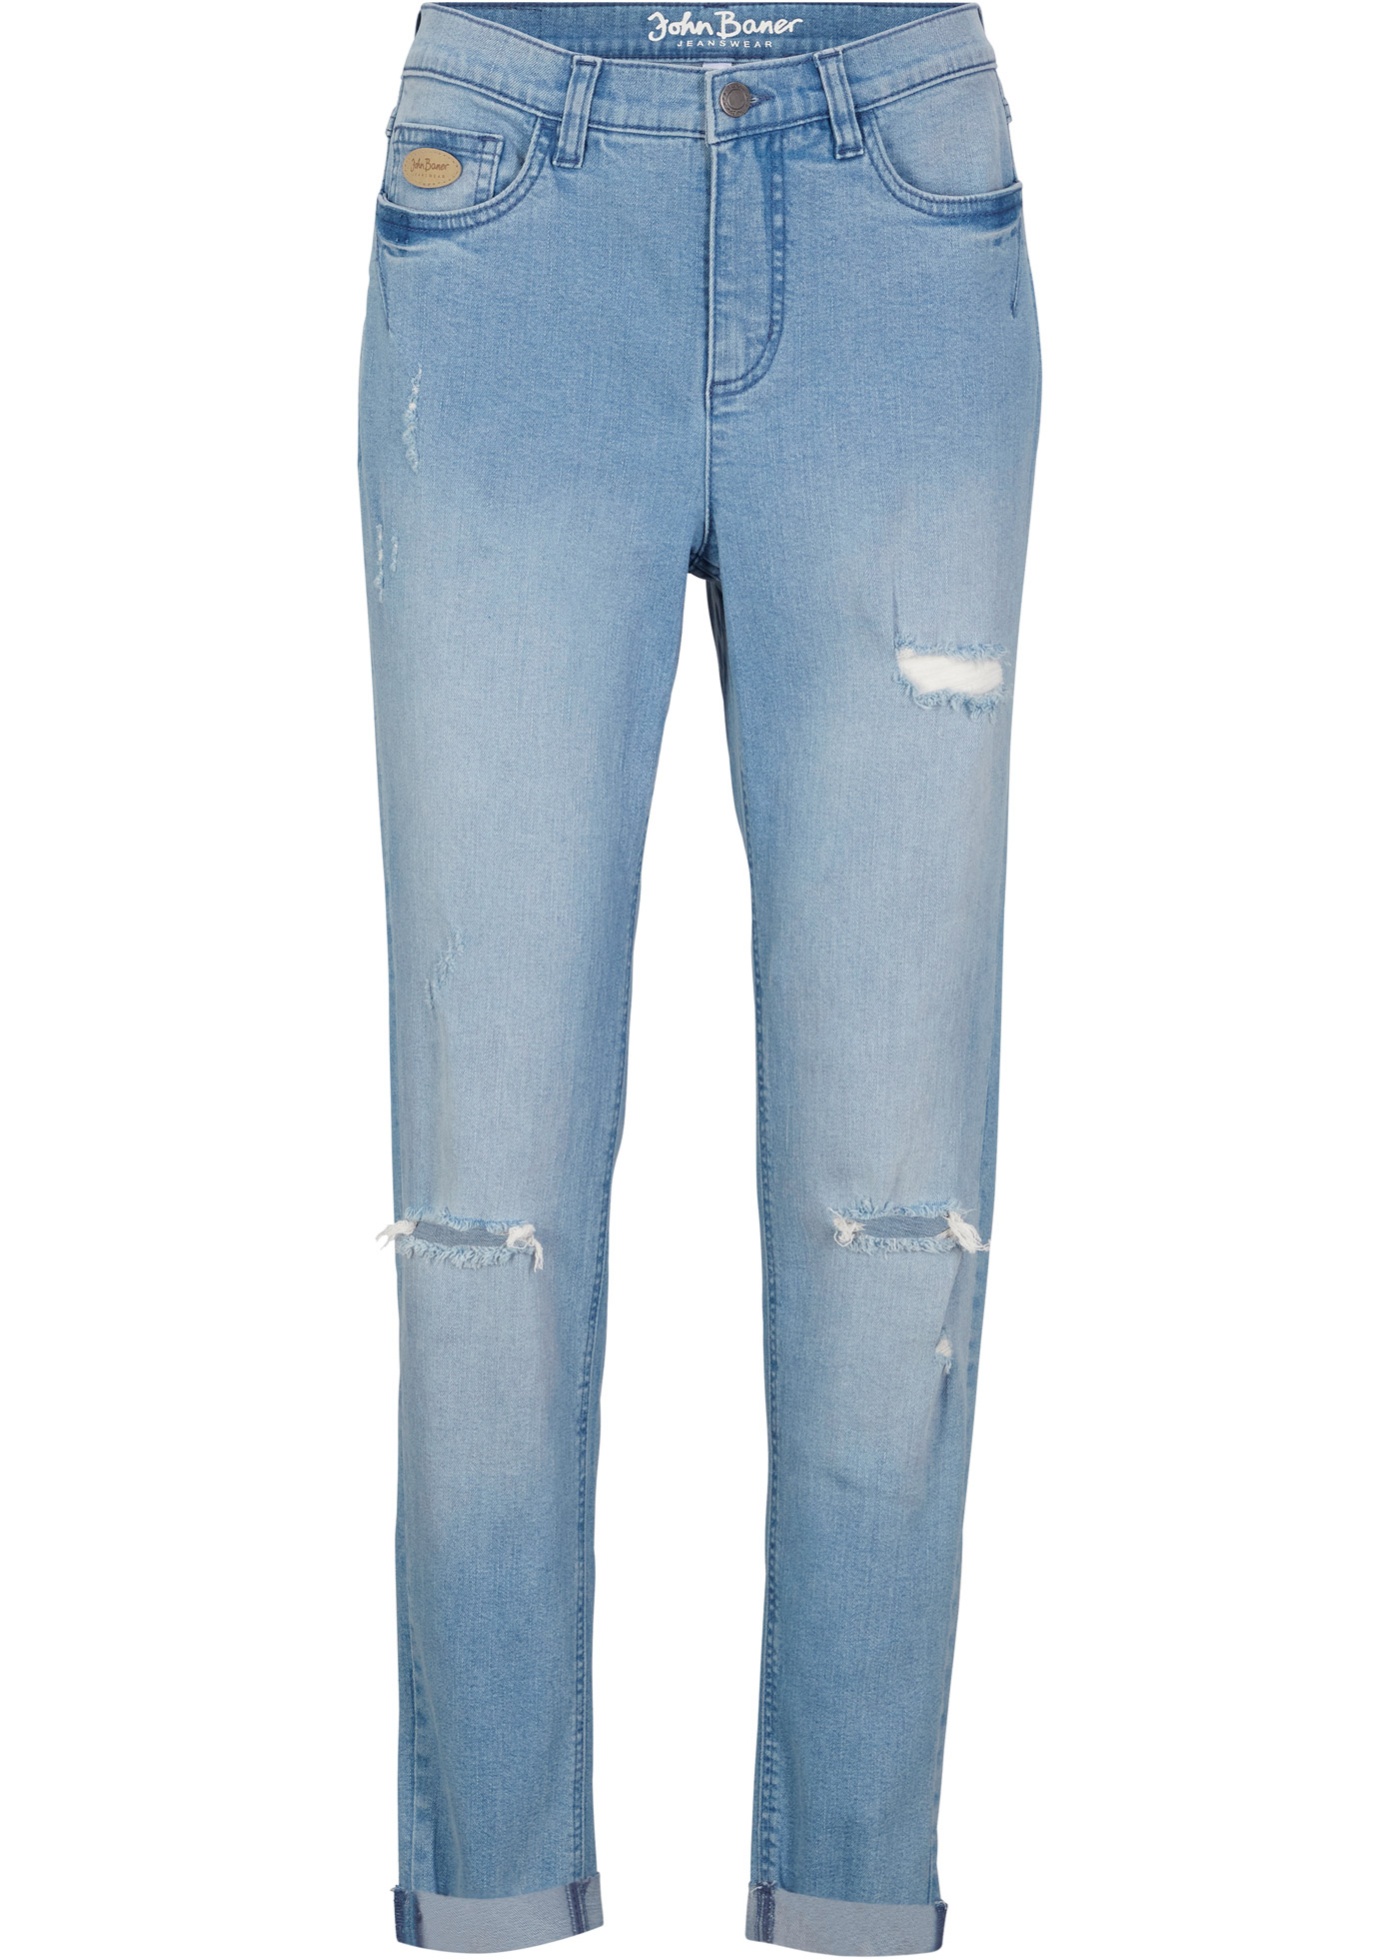 Trendige Boyfriend.Jeans (94513381) in hellblau denim used